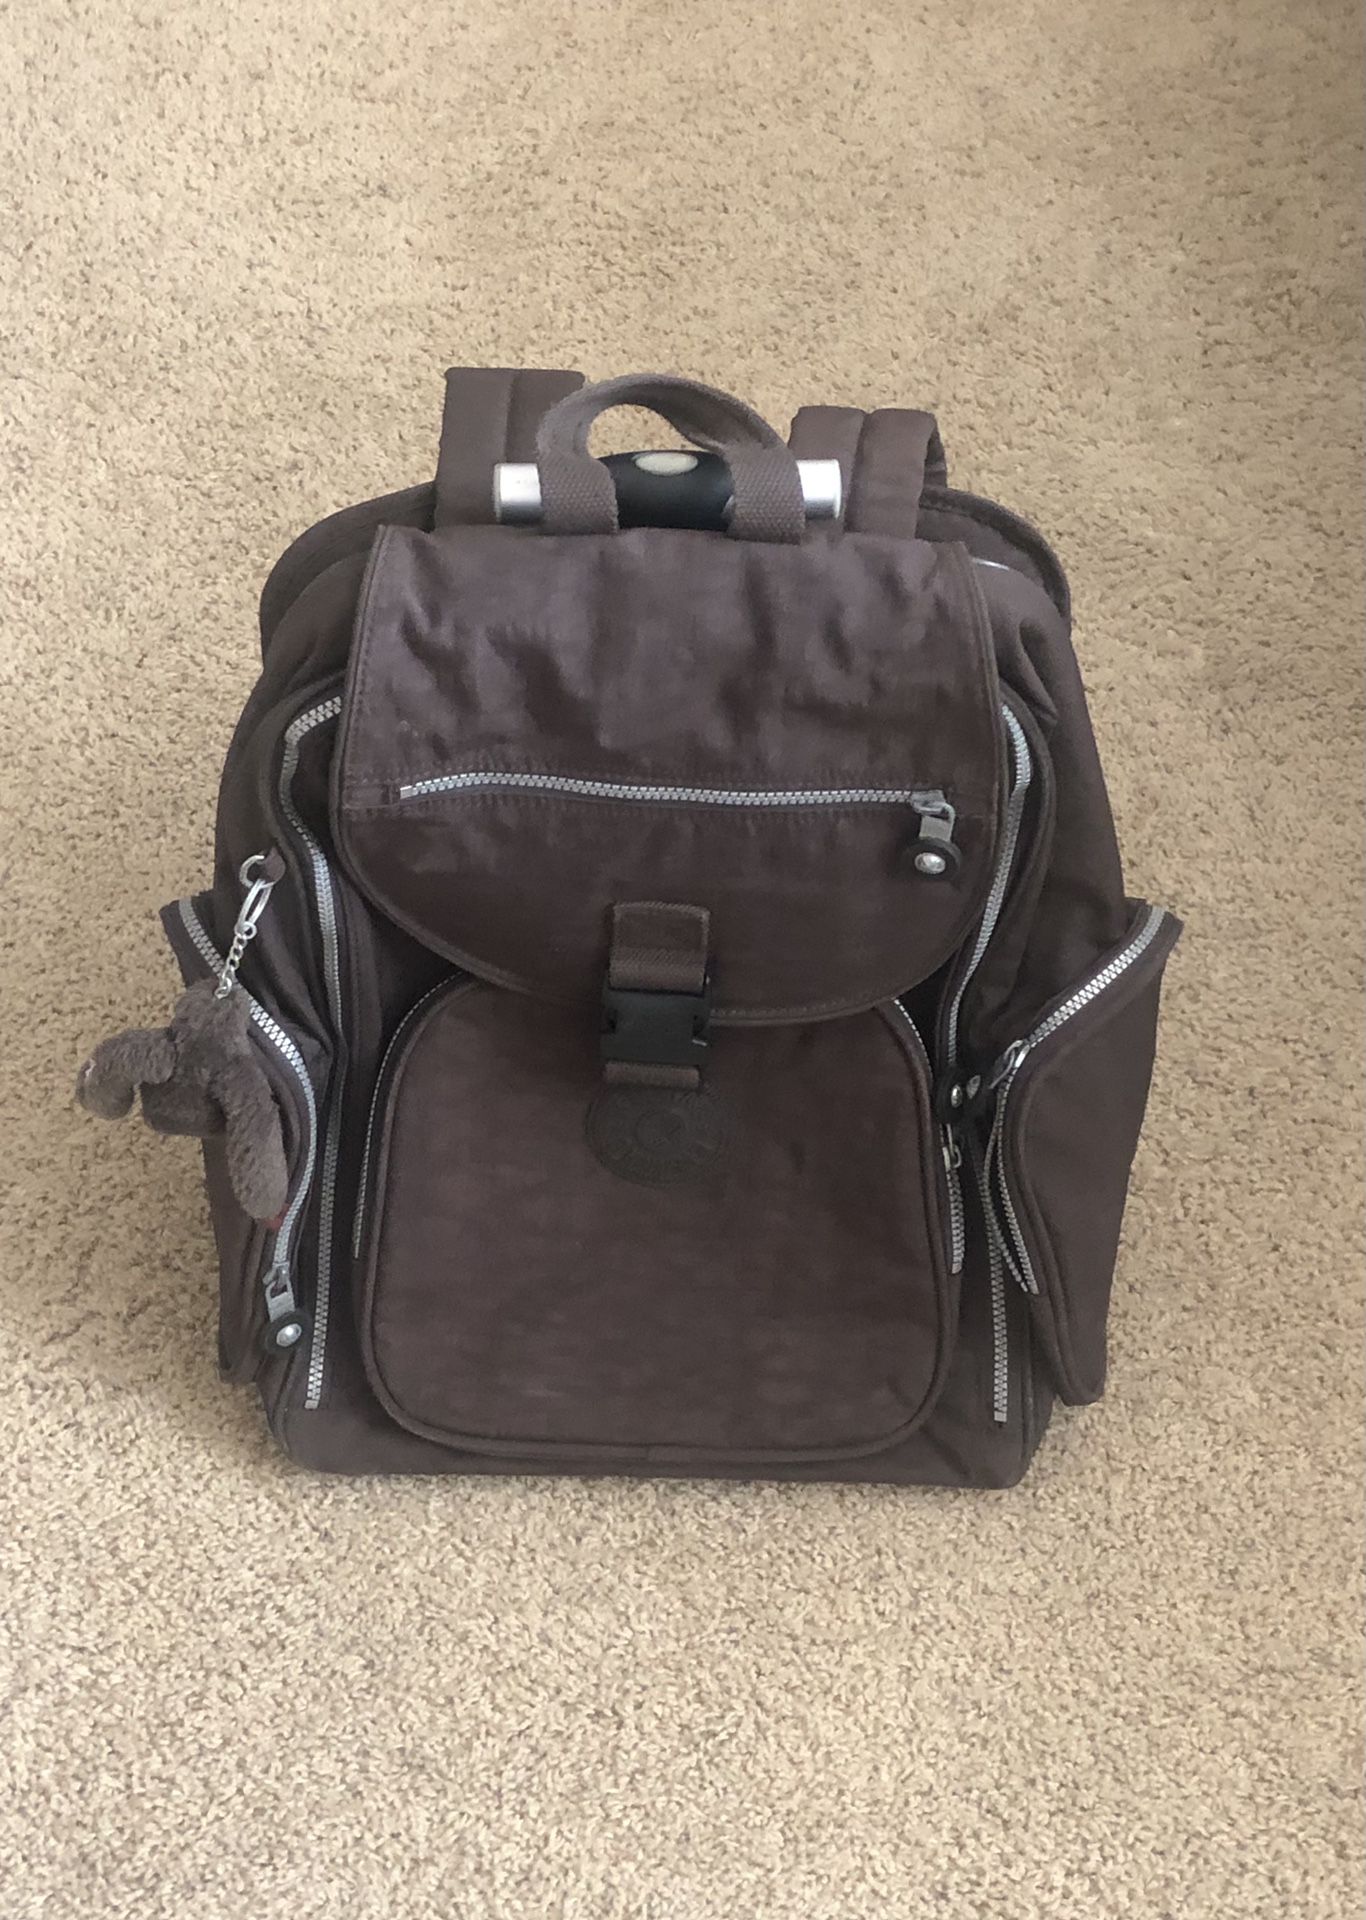 Brown Kipling Rolling Backpack